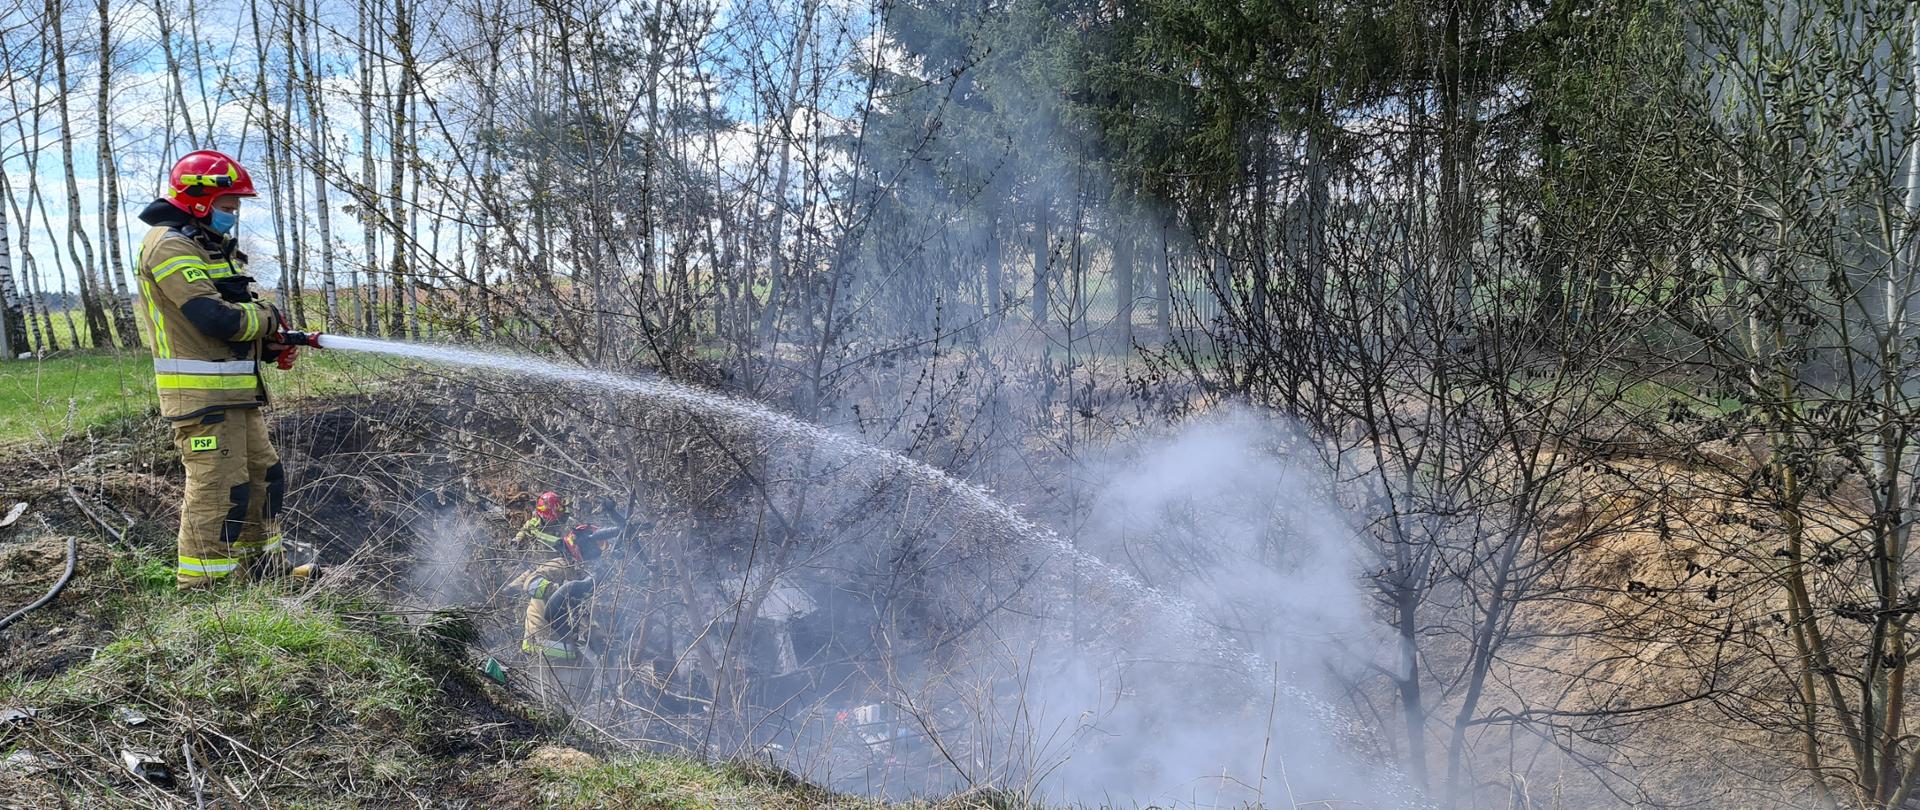 Zdjęcie przedstawia strażaka gaszącego palącą się trawę. Zdjęcie zrobione jest w dzień. Strażak ubrany jest w piaskowy strój, stoi na górce, a paląca się trawa i pozostałości roślinne znajdują się w dole. W dole znajdują się również 2 pracujący strażacy.